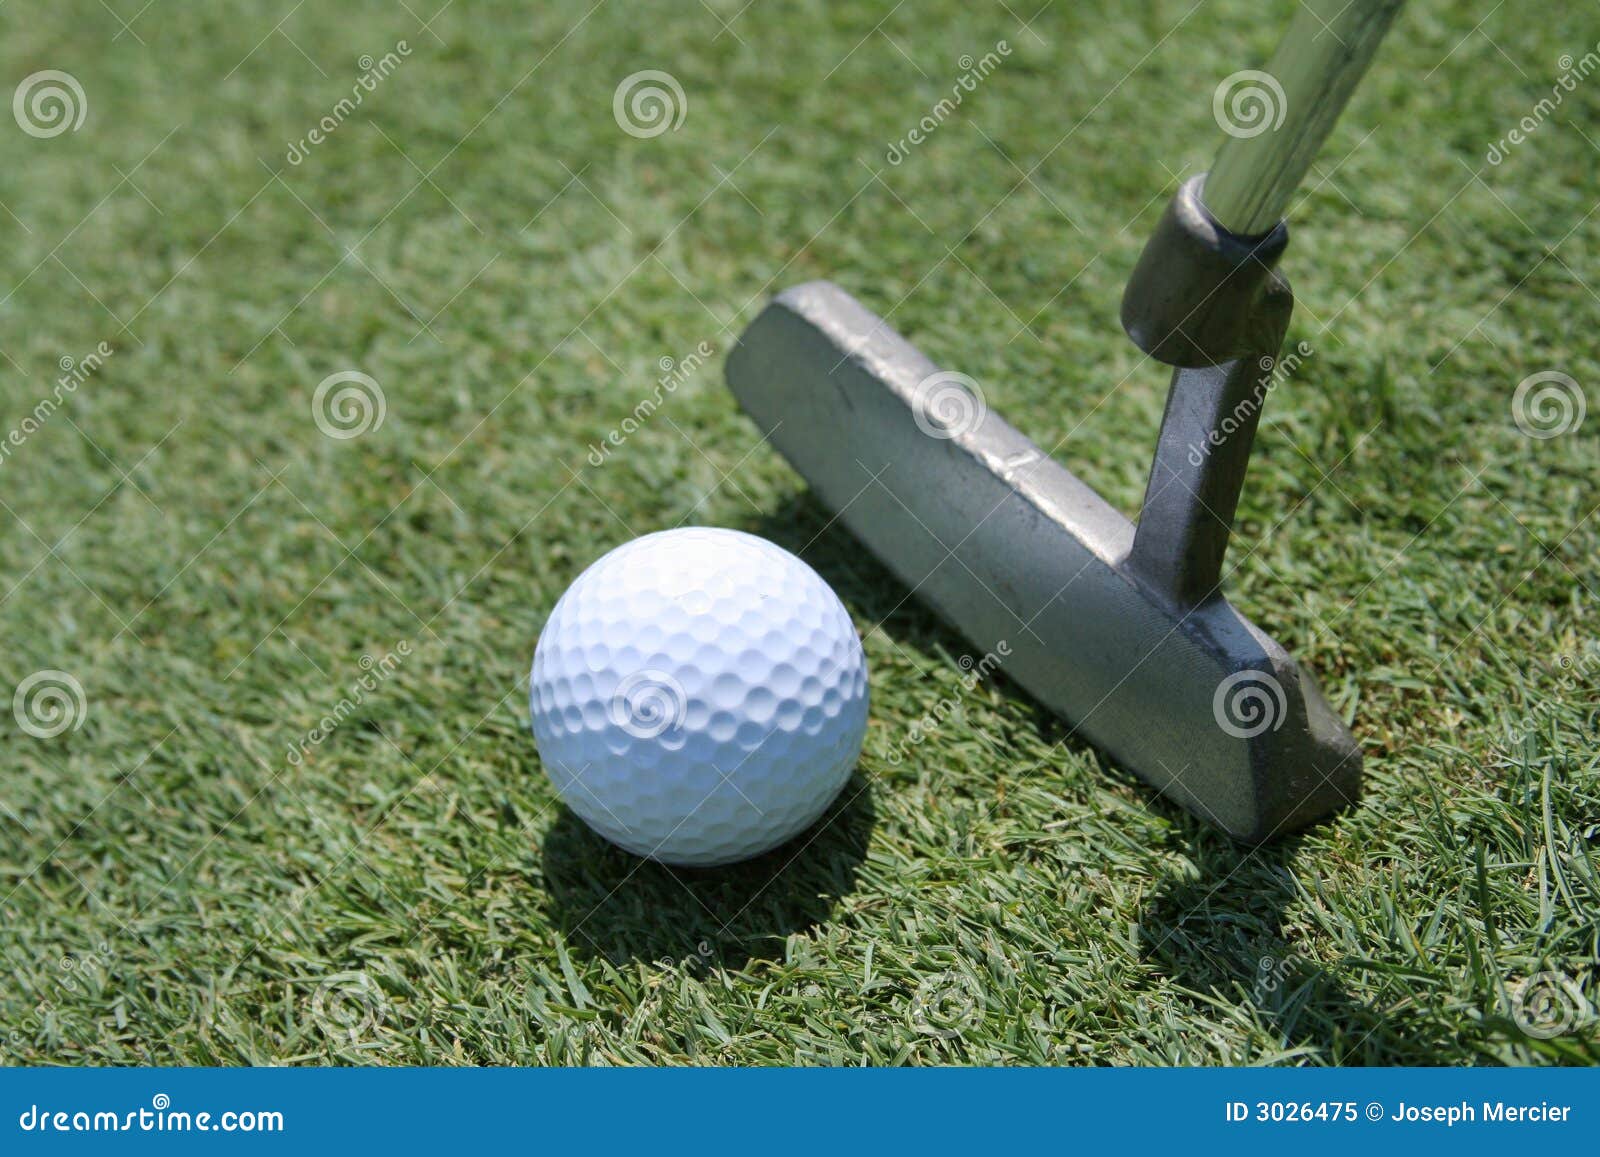 golf putter, ball and green